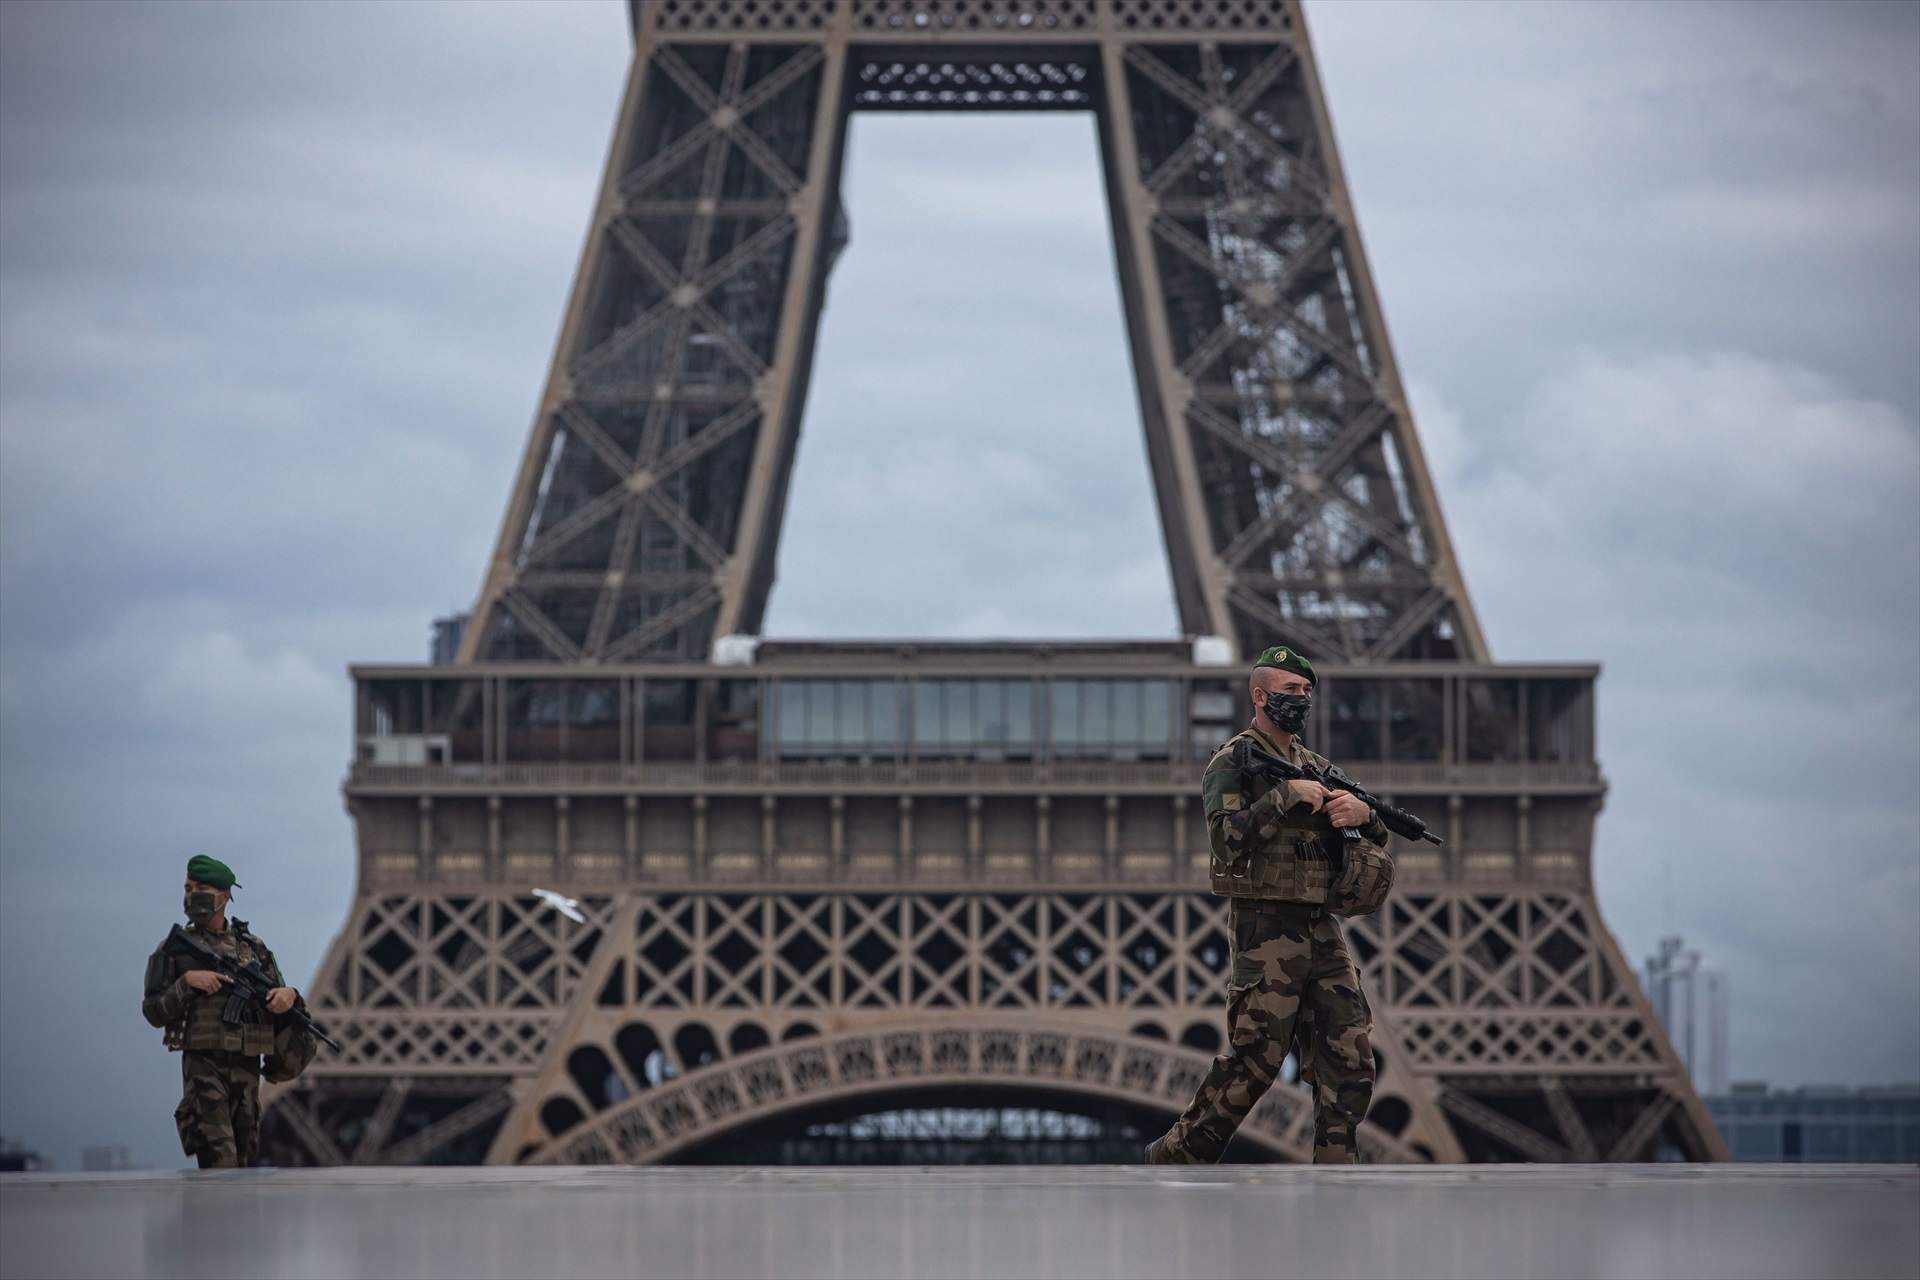 Francia eleva al máximo el nivel de alerta terrorista después del atentado en Rusia